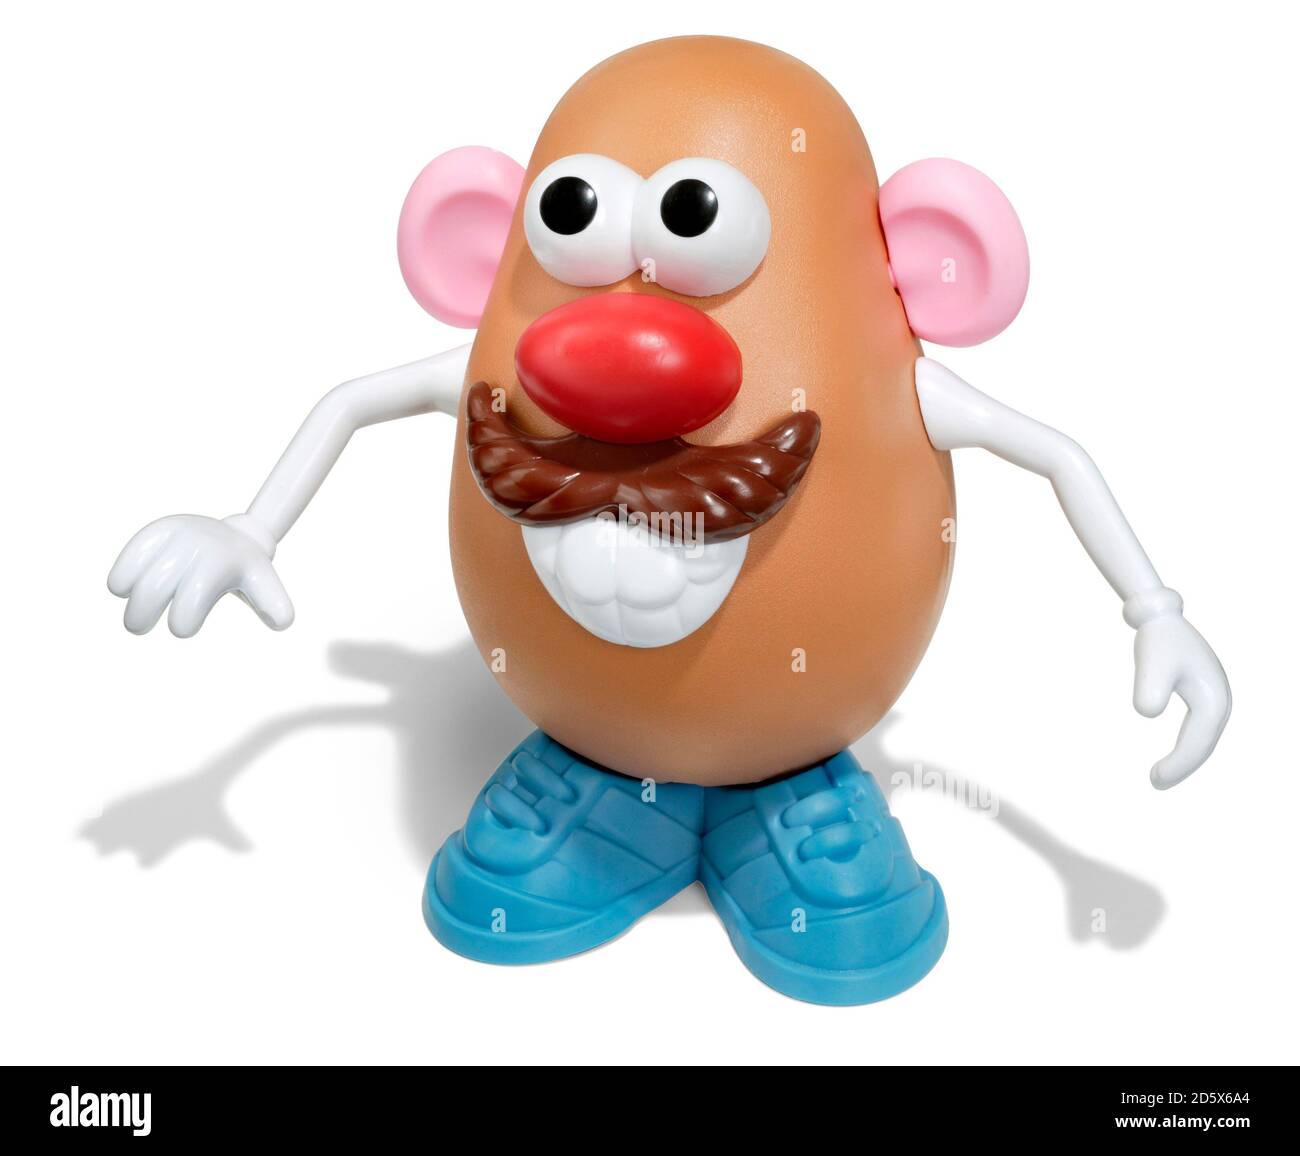 Herr Potato Kopf Spielzeug ohne Hut auf einem fotografiert Weißer Hintergrund Stockfoto